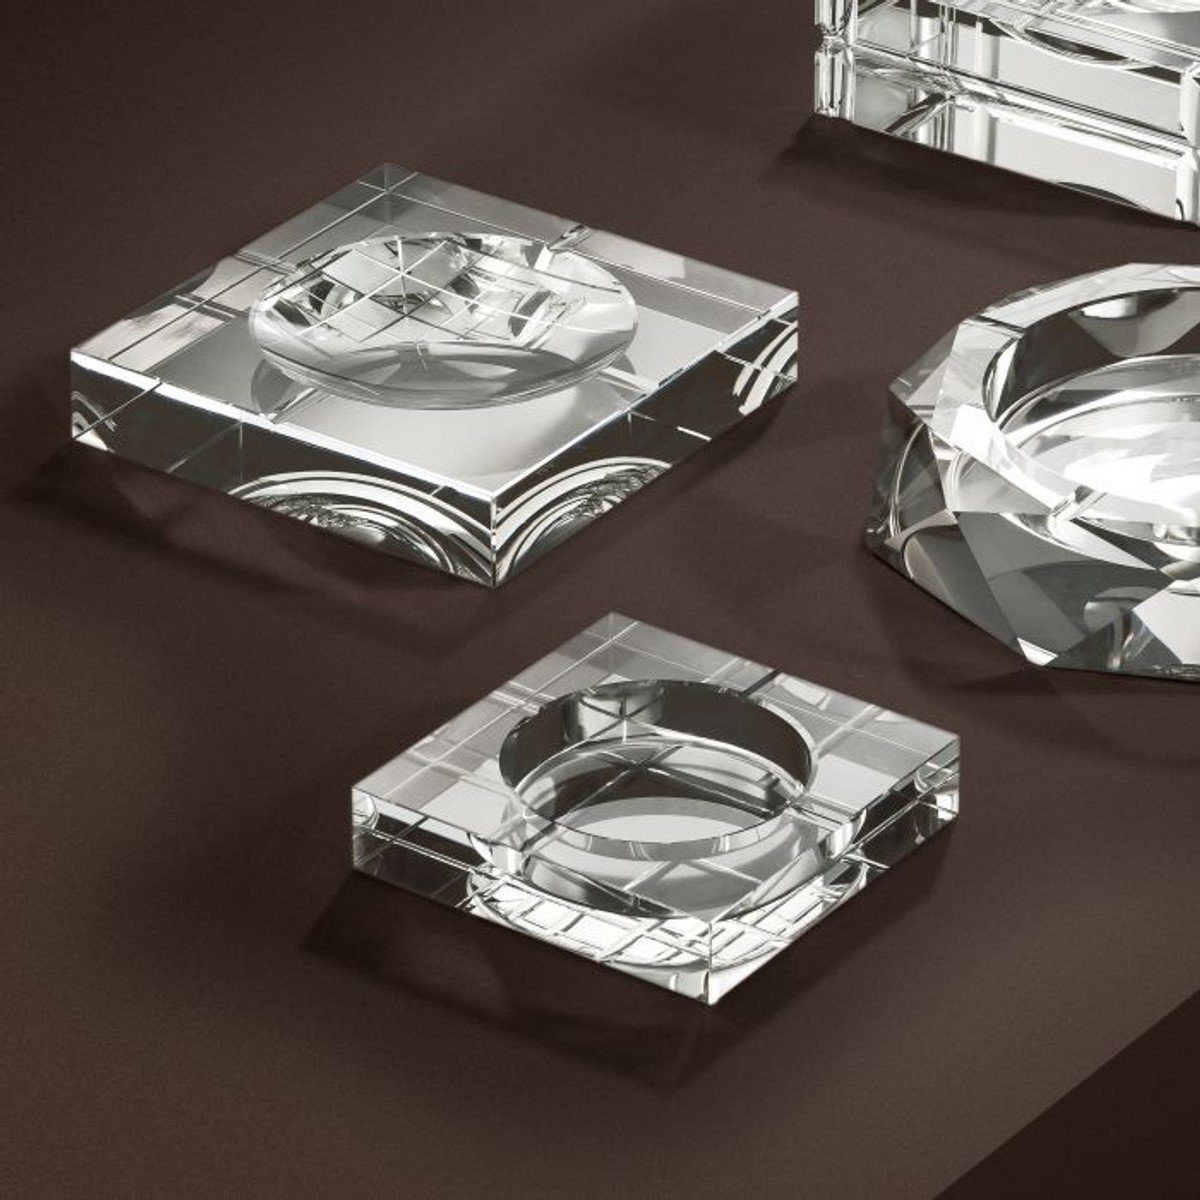 & - Luxury Kristall cm Schwer x Padrino Aschenbecher 15 Aschenbecher x Massiv 15 Luxus Glas Casa Edition 3